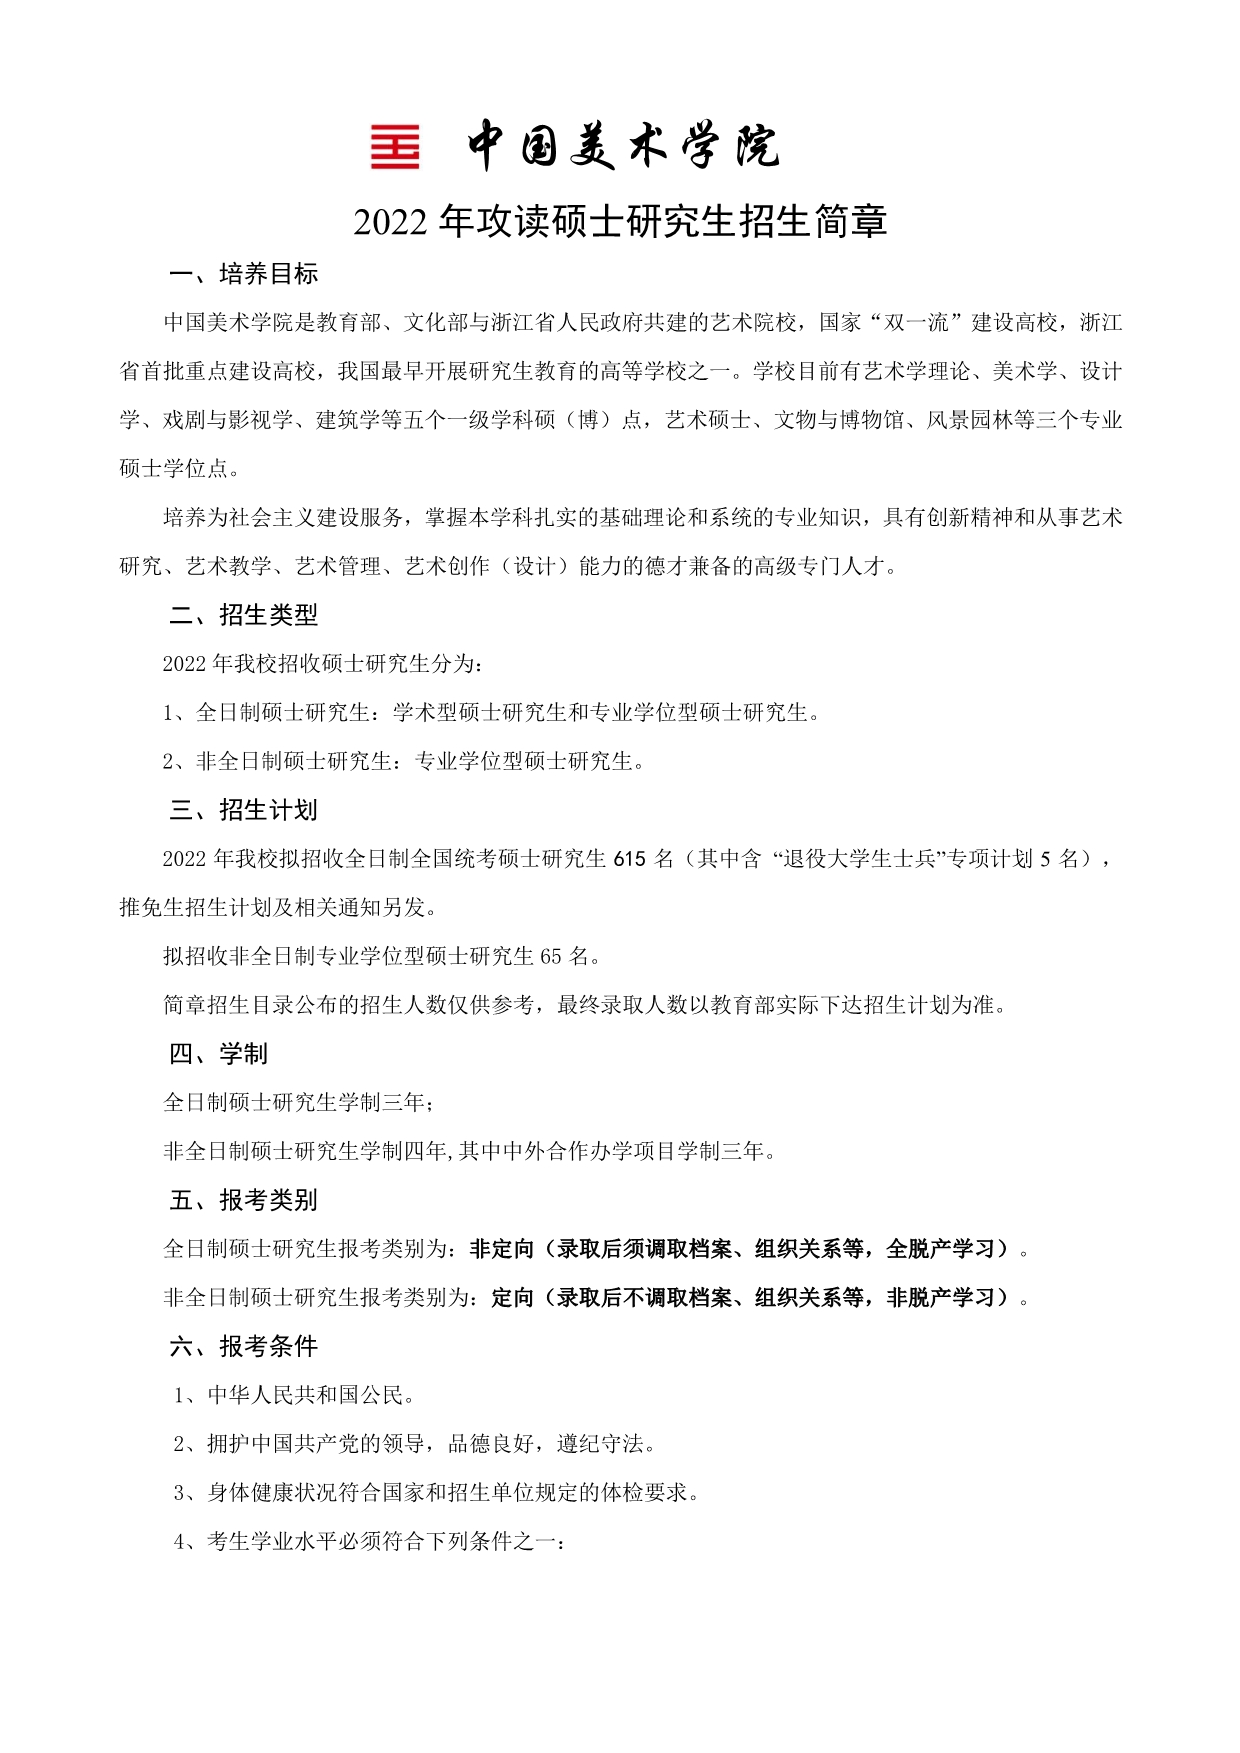 中国美术学院2022年攻读硕士研究生招生简章1.jpg